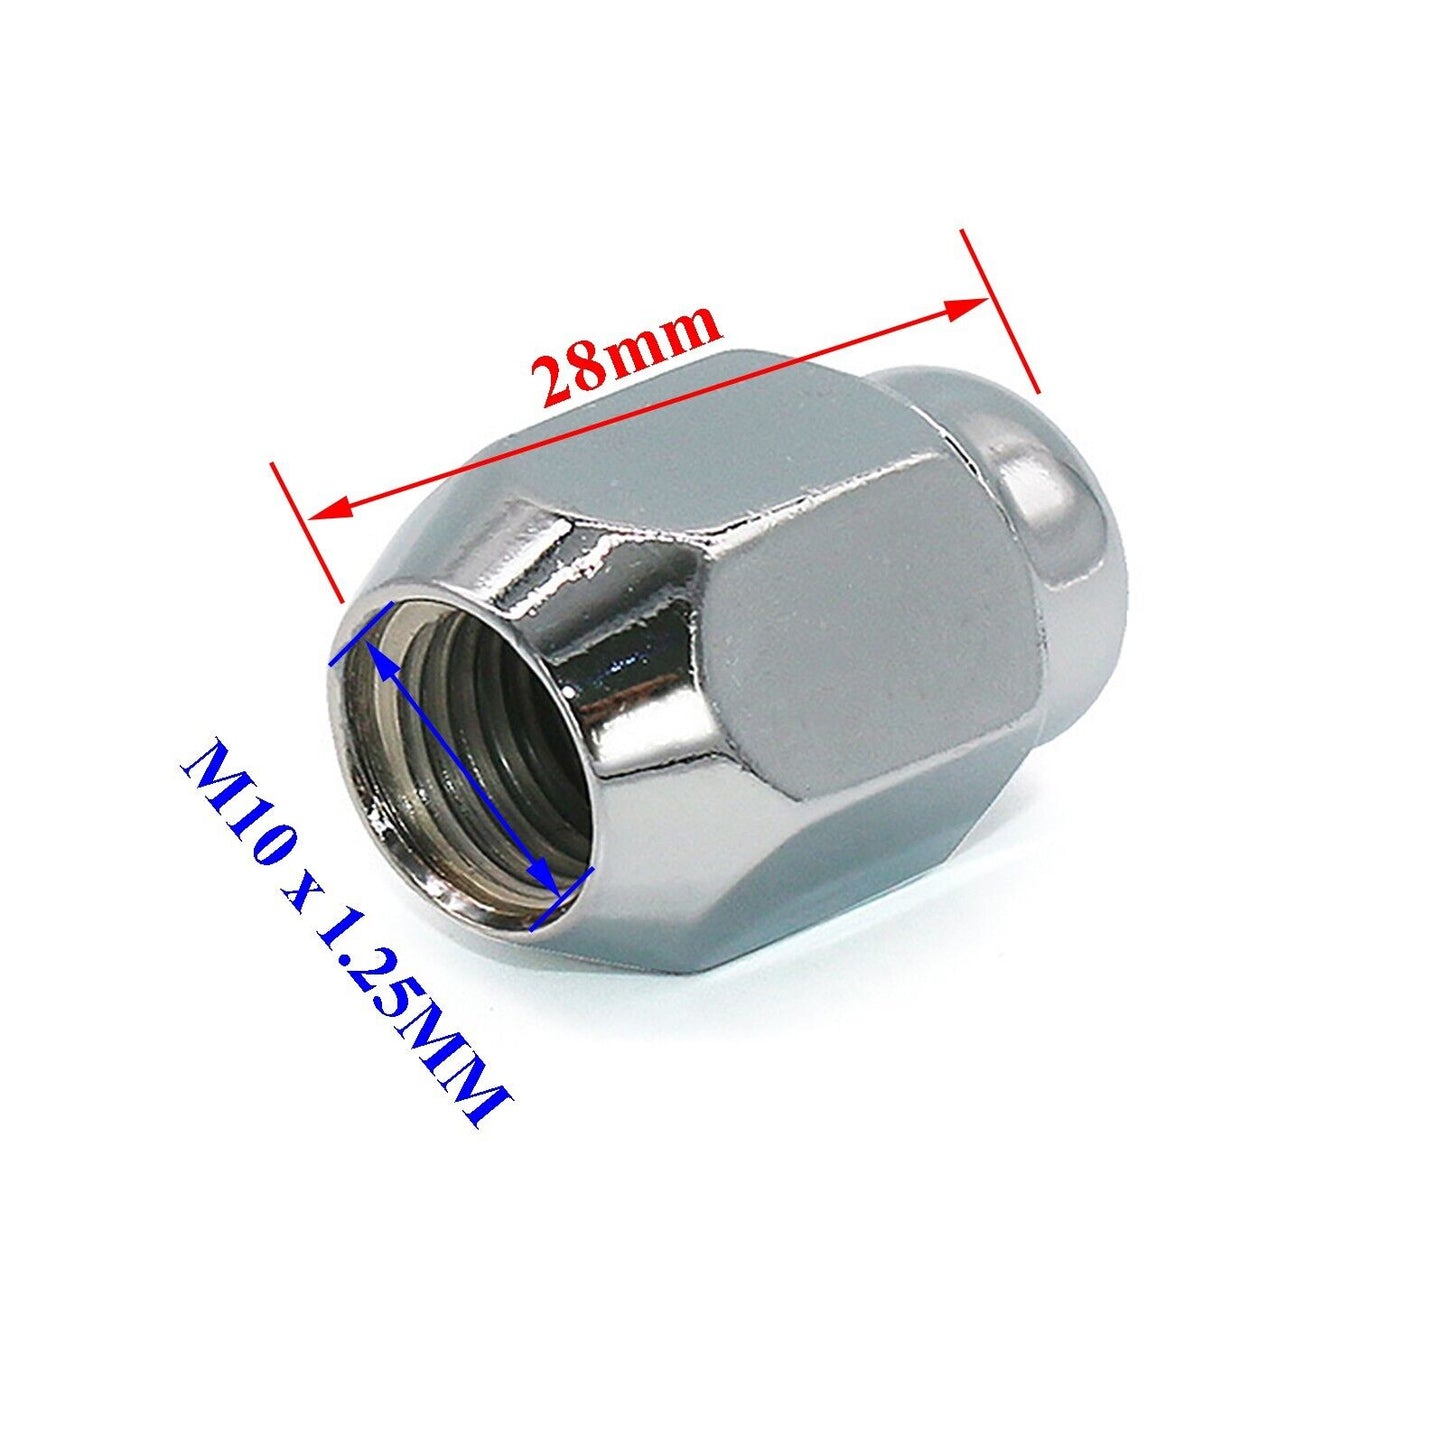 4x 17mm Head 10x1.25MM ATV QUAD Wheel Lug Rim End Cap Nuts - Chrome